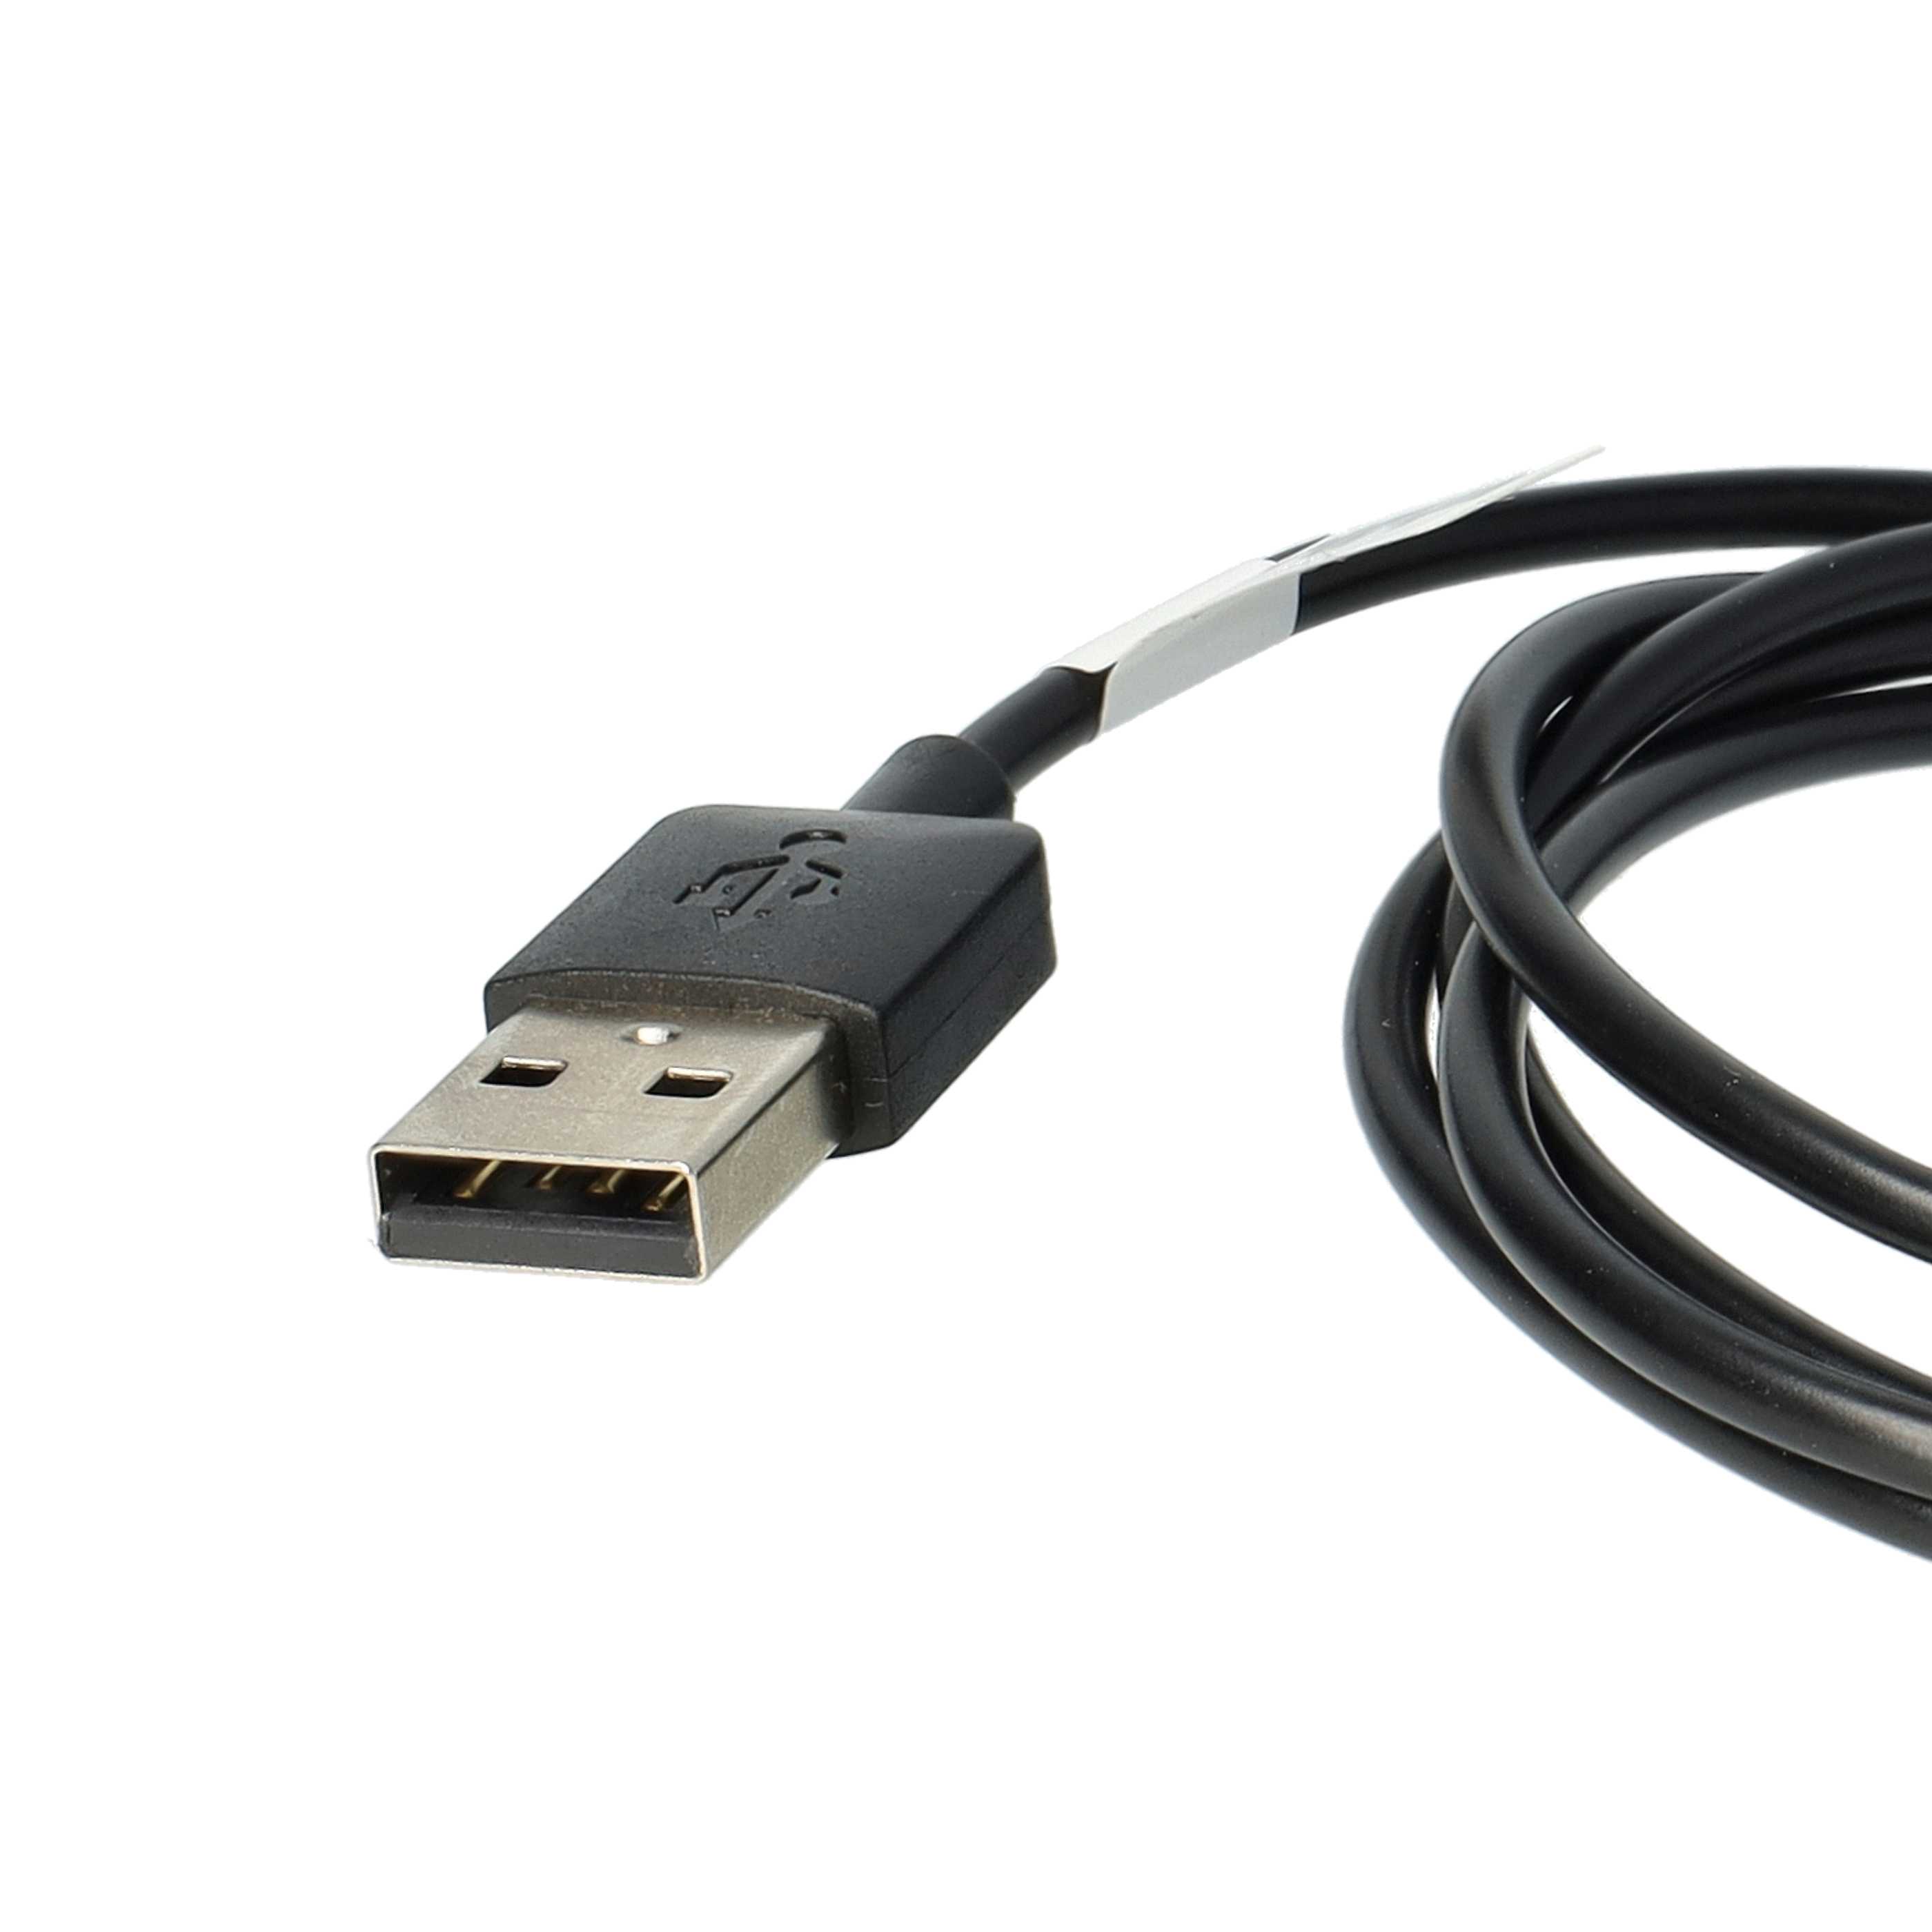 Cable de carga USB reemplaza Garmin 8013048 para smartwatch Garmin - negro 100 cm